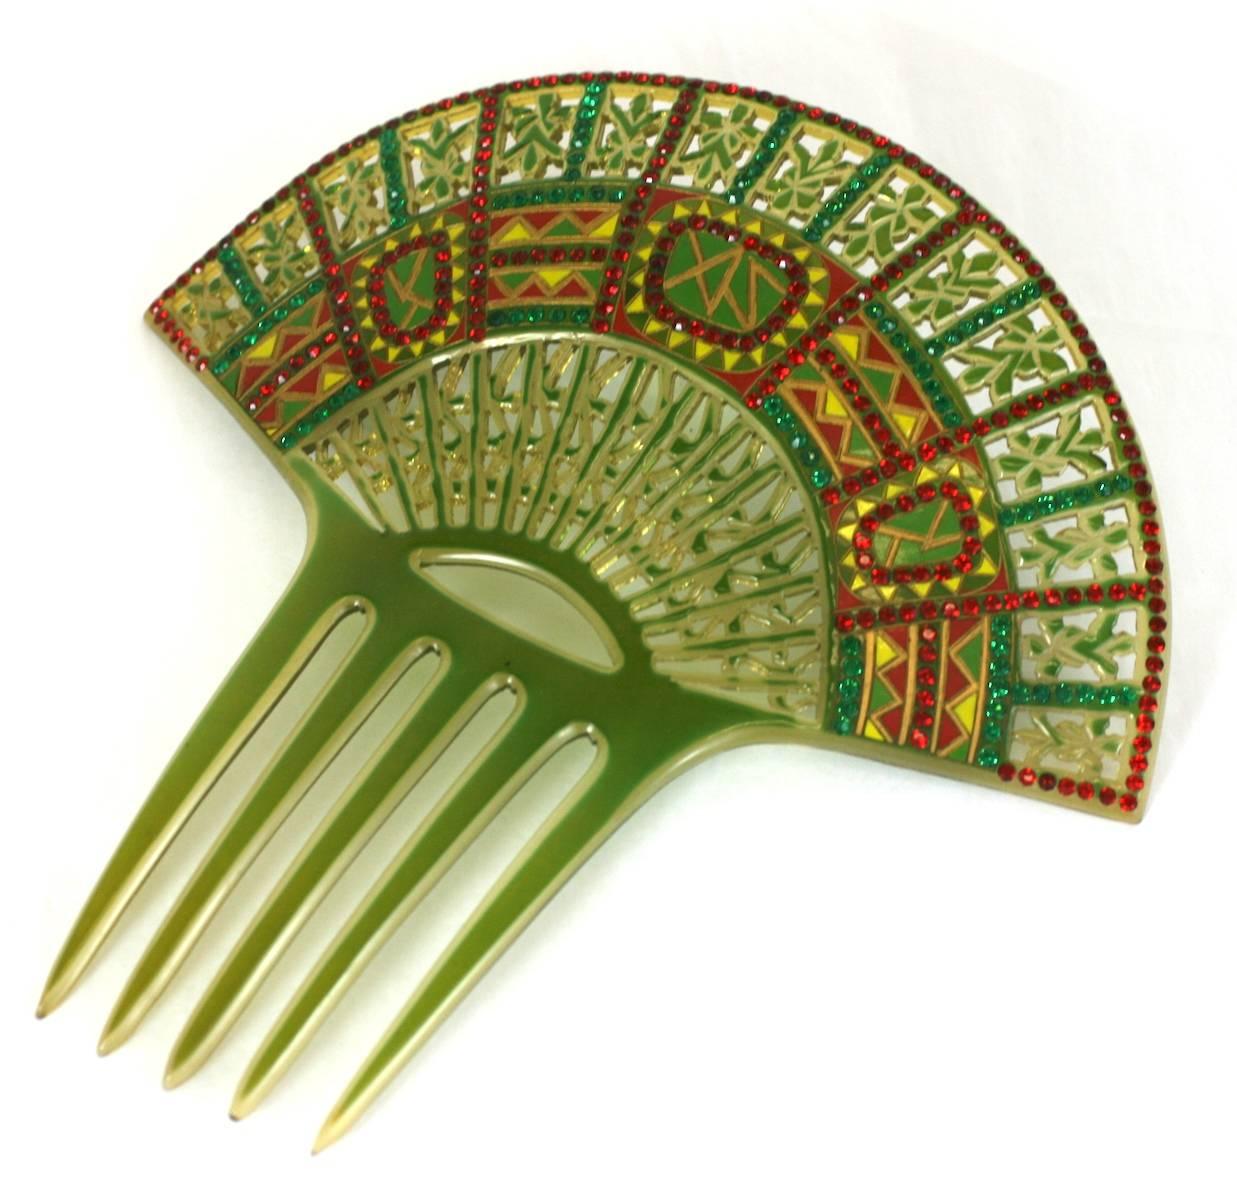 Wunderschöner Art Deco Eygptian Revival Kamm aus klarem Zelluloid mit grüner Überlagerung. Das Design wird dann durchbrochen, übermalt und mit roten und grünen Pflastersteinen besetzt. Frankreich 1930er Jahre. 
Ausgezeichneter Zustand. 7